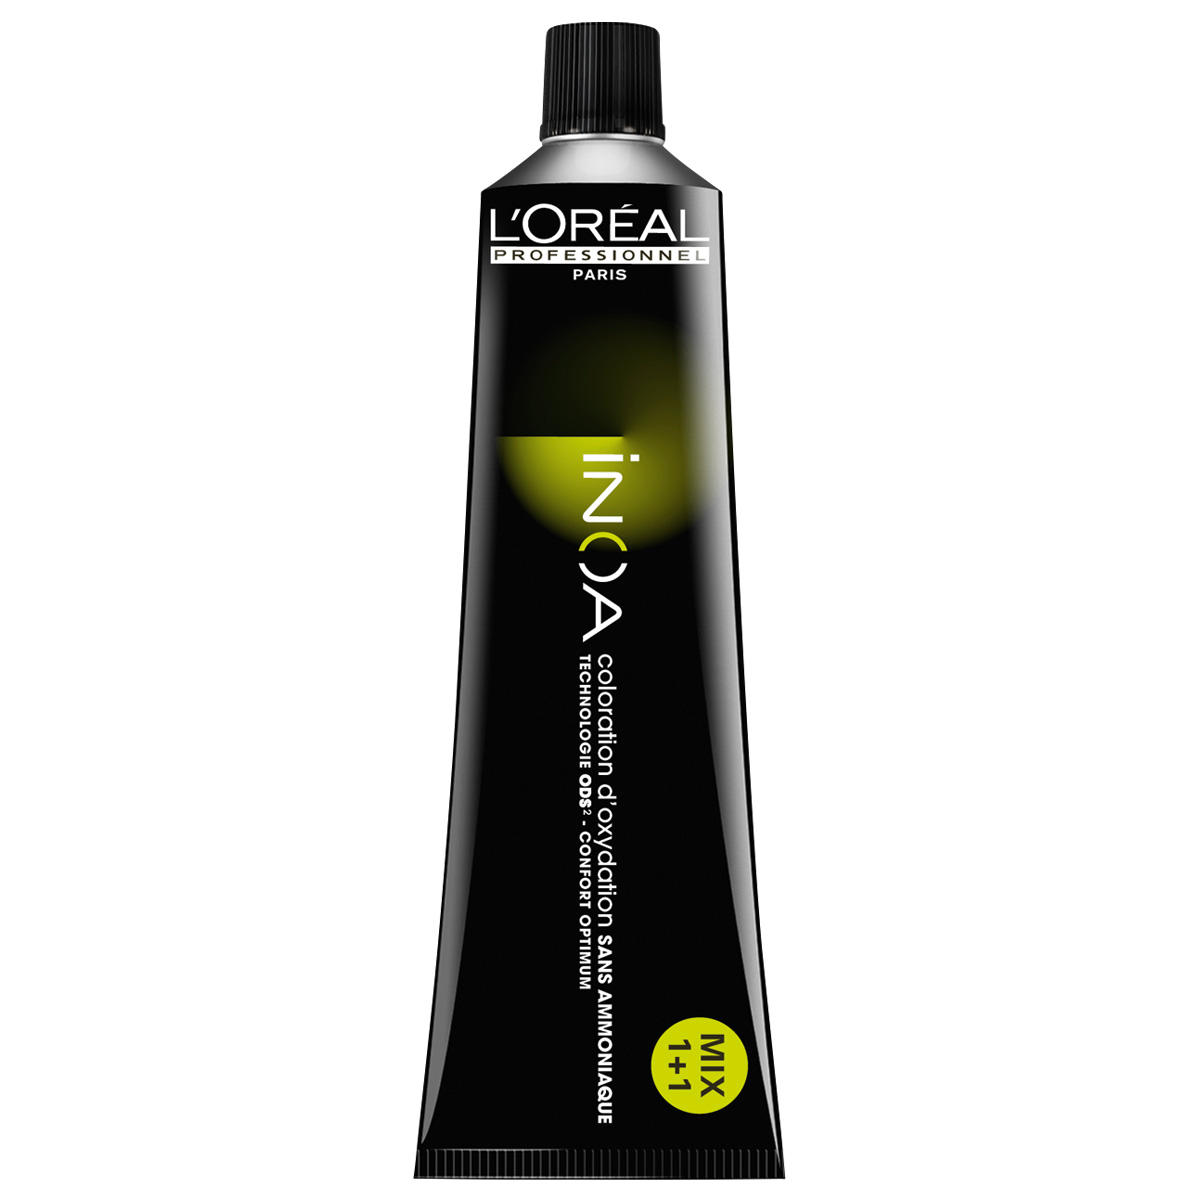 L'Oréal Professionnel Paris Coloration 8 blond clair, Tube 60 ml